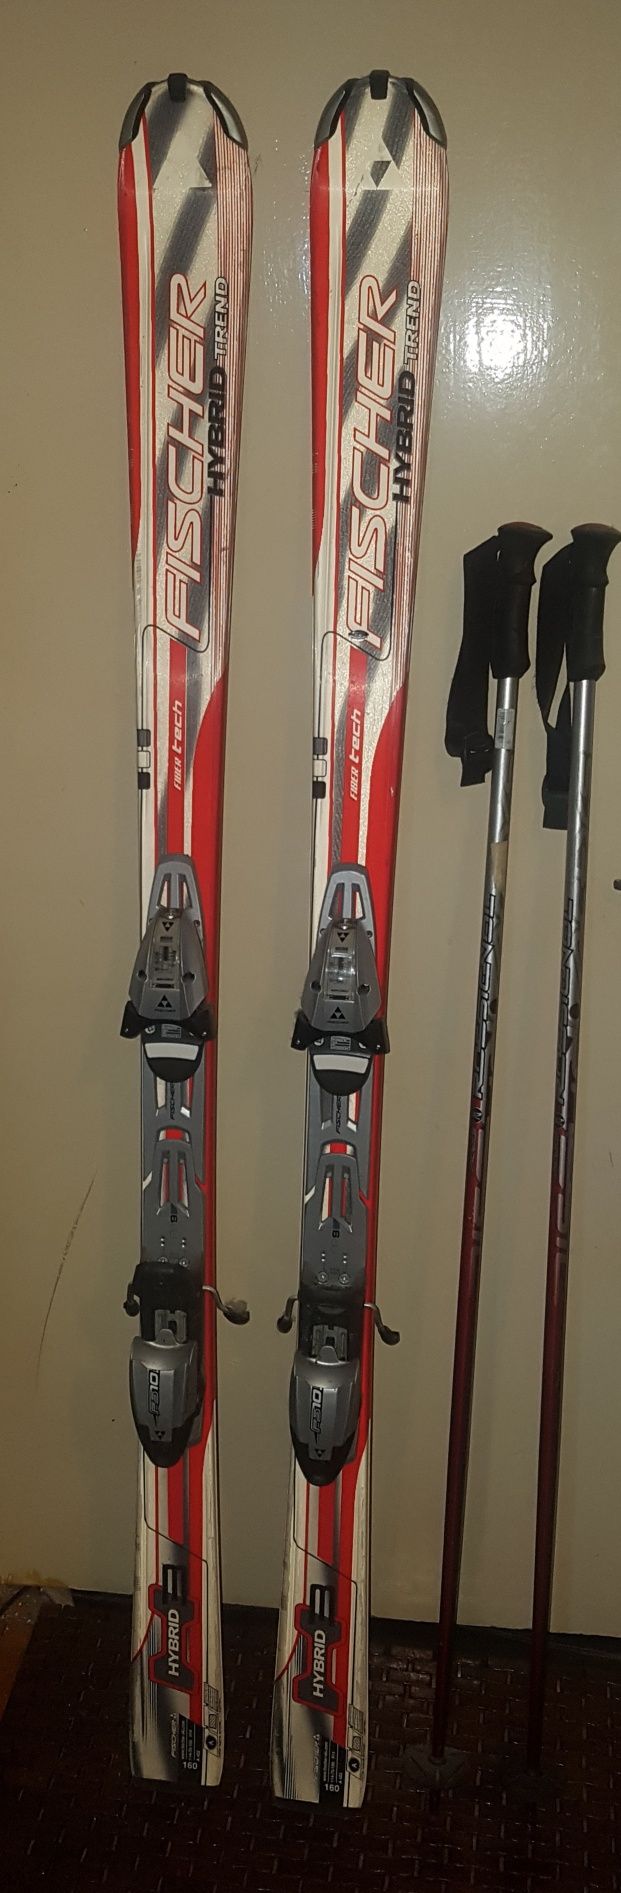 Skiuri Fischer + bețe